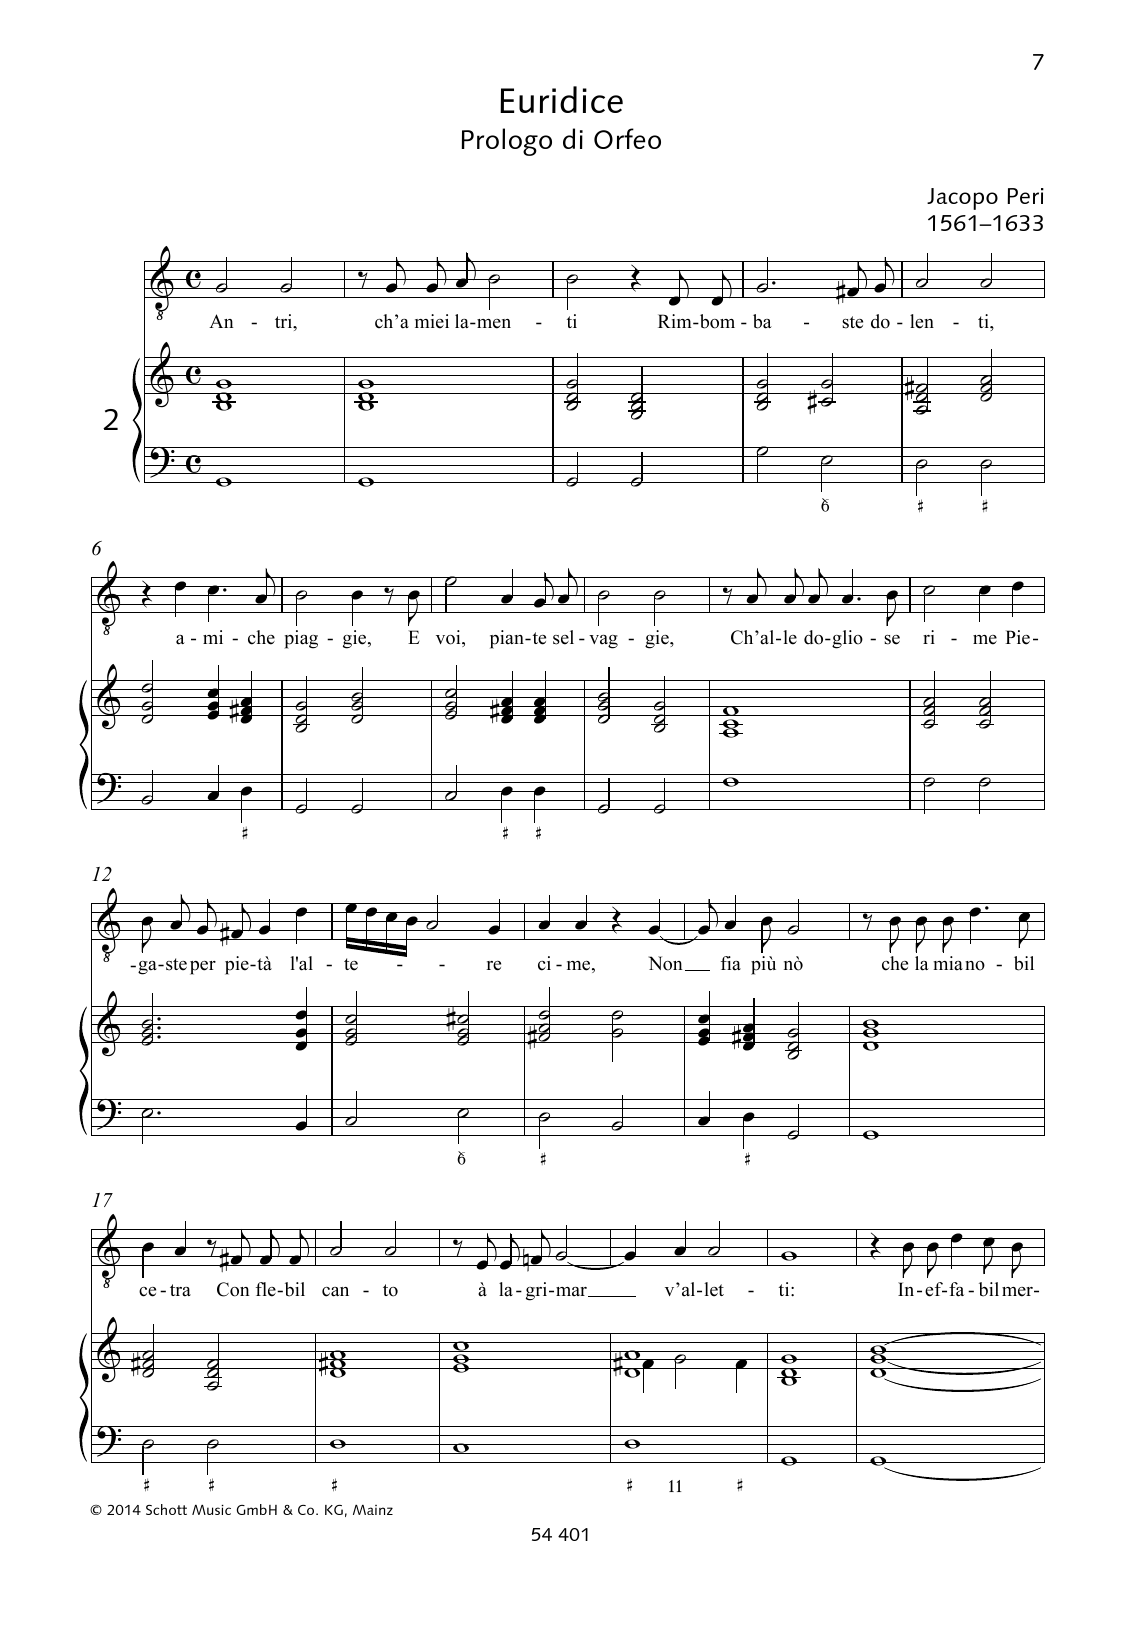 Jacopo Peri Antri, ch'a miei lamenti Rimbombaste dolenti Sheet Music Notes & Chords for Piano & Vocal - Download or Print PDF